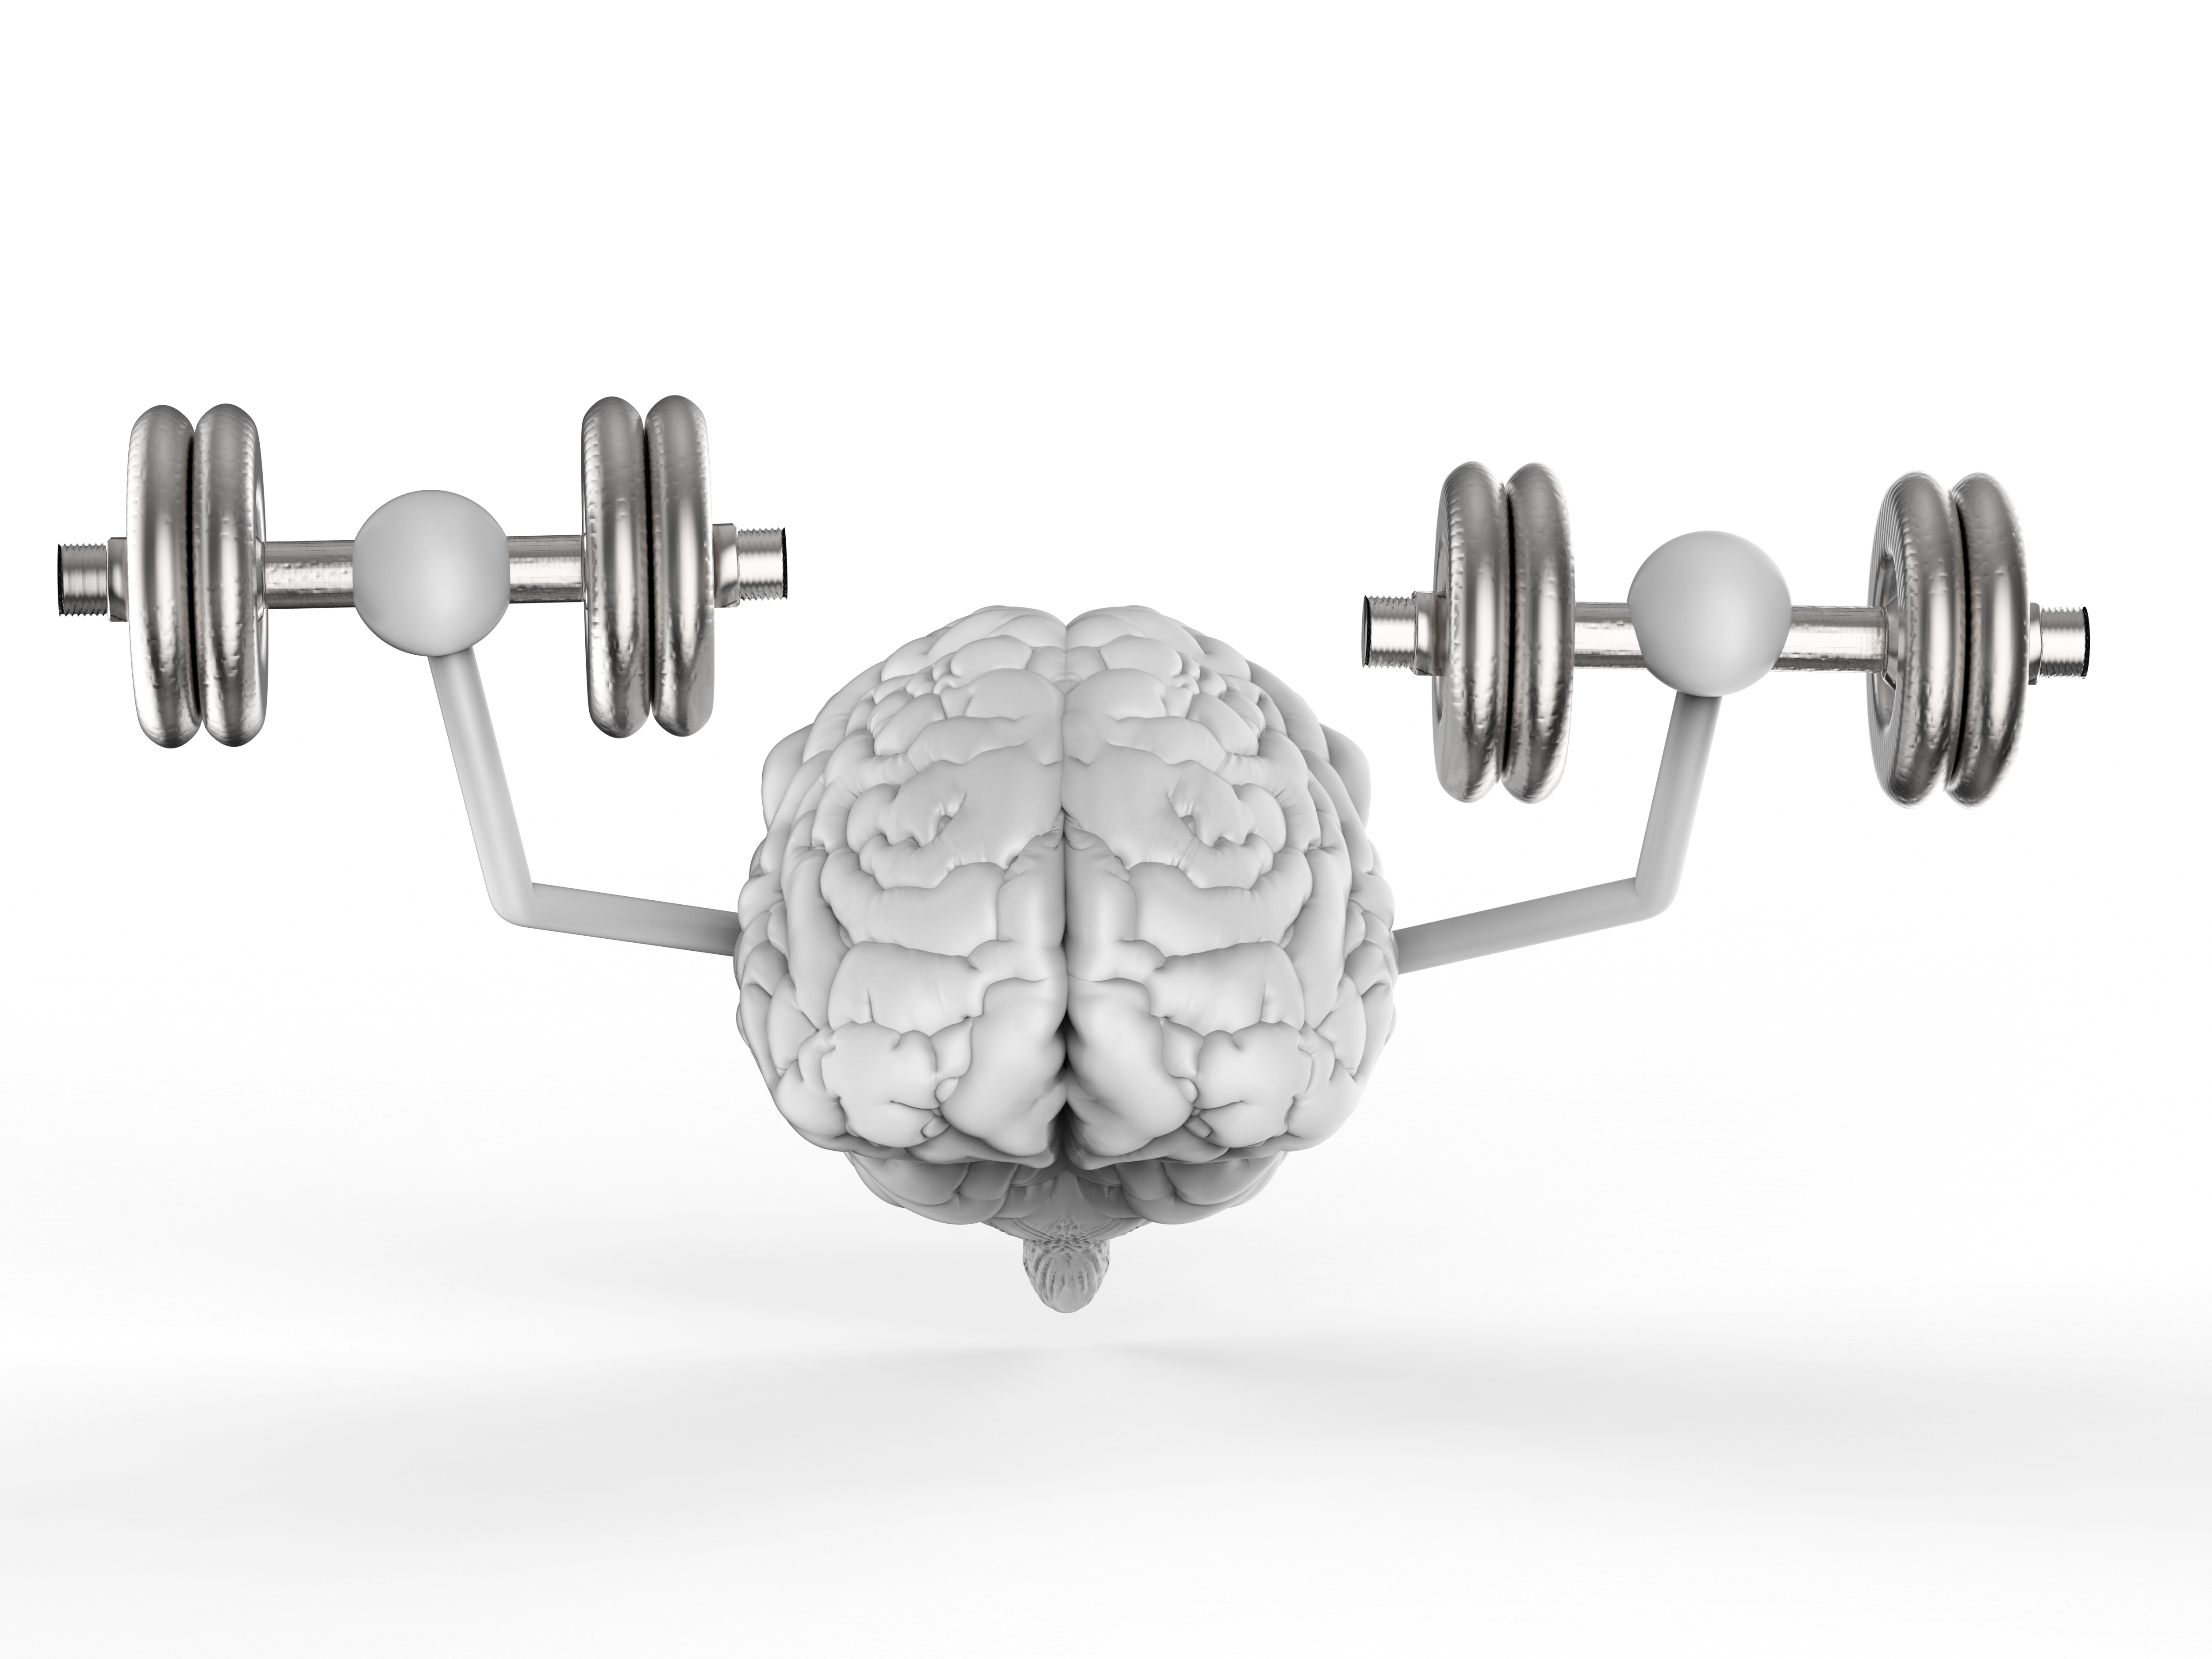 Comment l’exercice « profite-t-il » au cerveau ? (Visuel Adobe Stock 150832189)